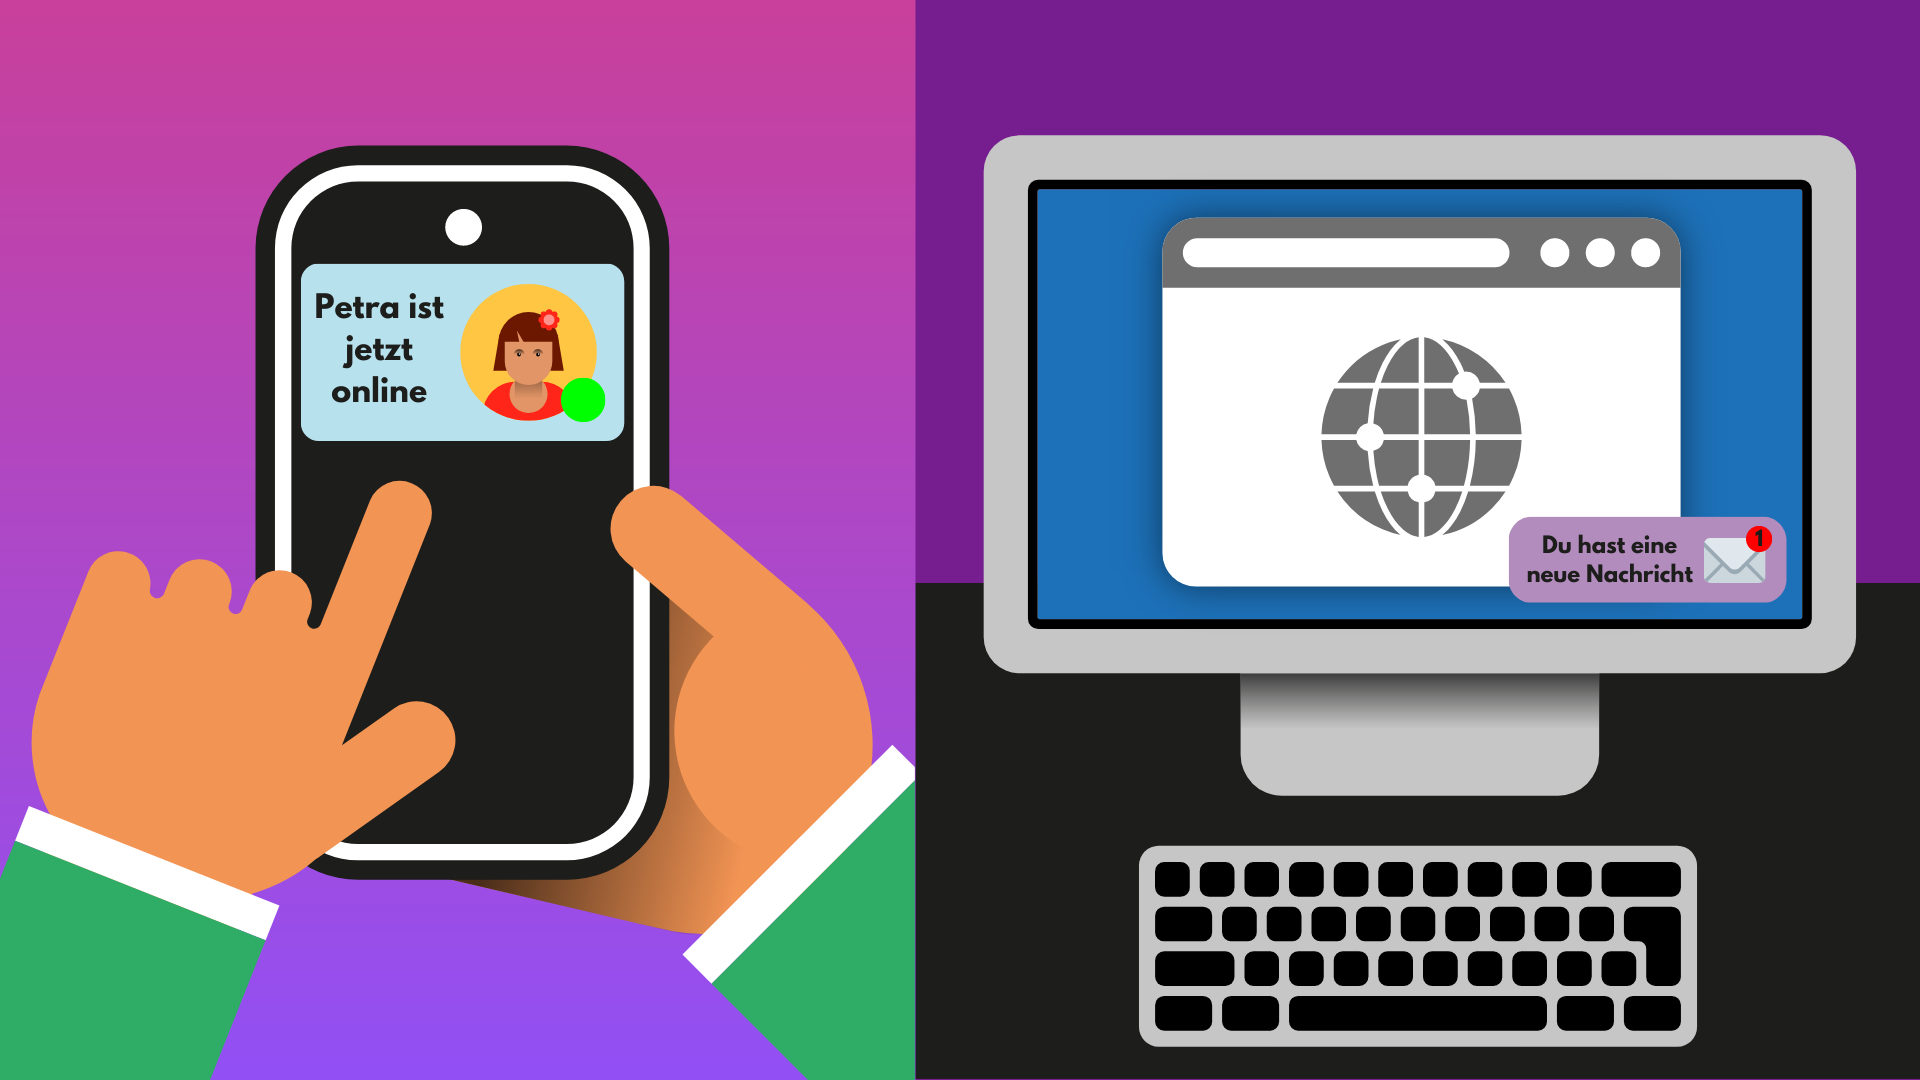 Zweigeteiltes Bild. Links ein Smartphone mit der Meldung "Petra ist jetzt online". Rechts ein Bildschirm mit der Meldung "Du hast eine neue Nachricht".